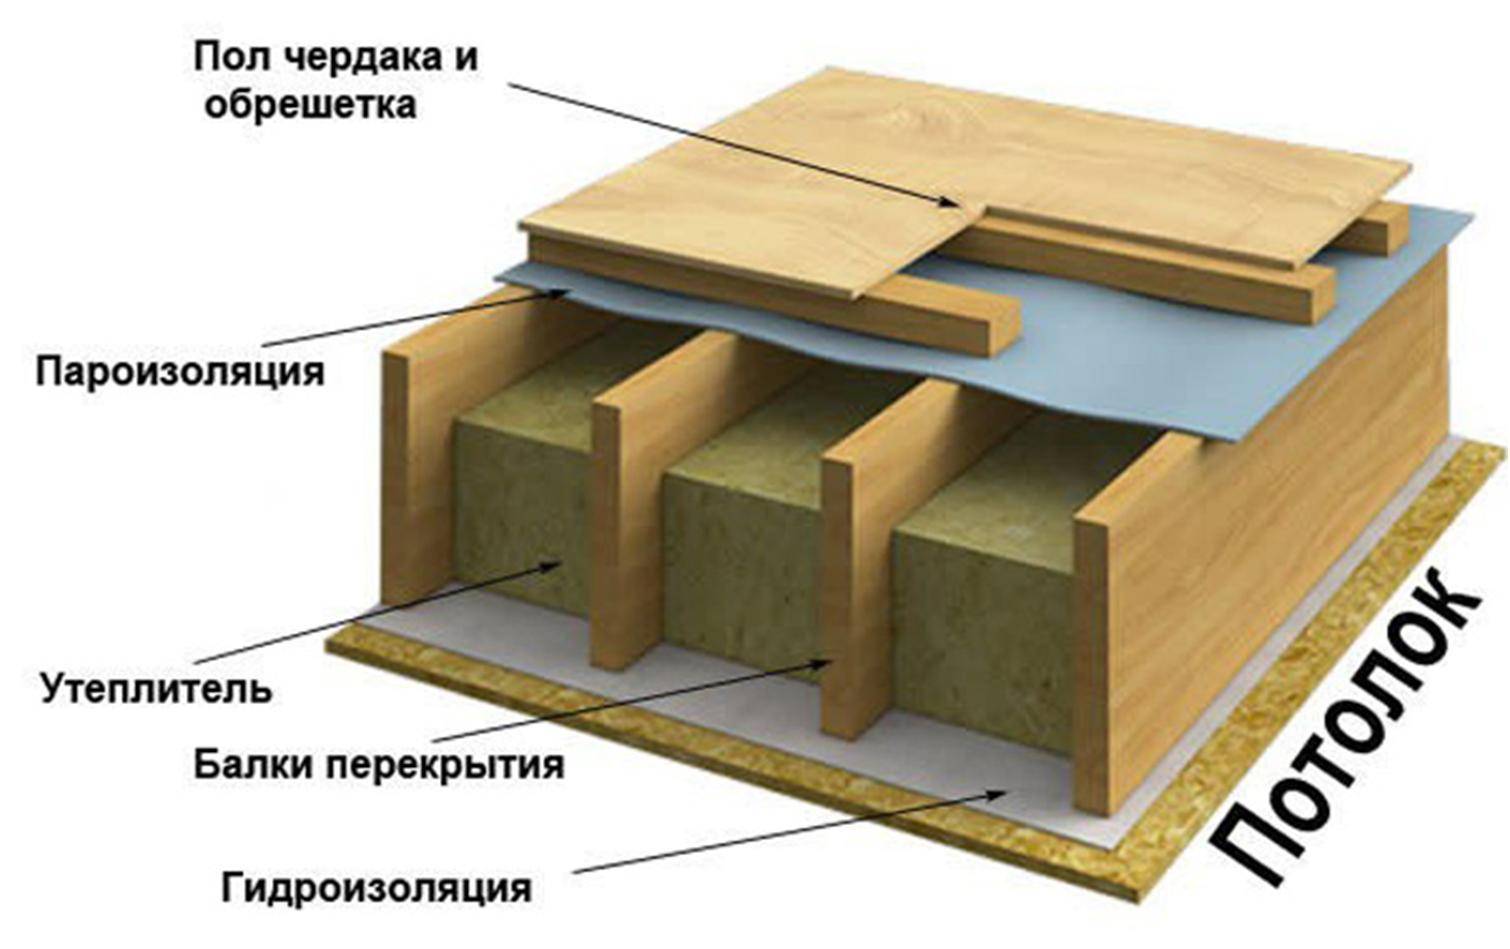 Как утеплить межэтажное перекрытие – по полу и потолку